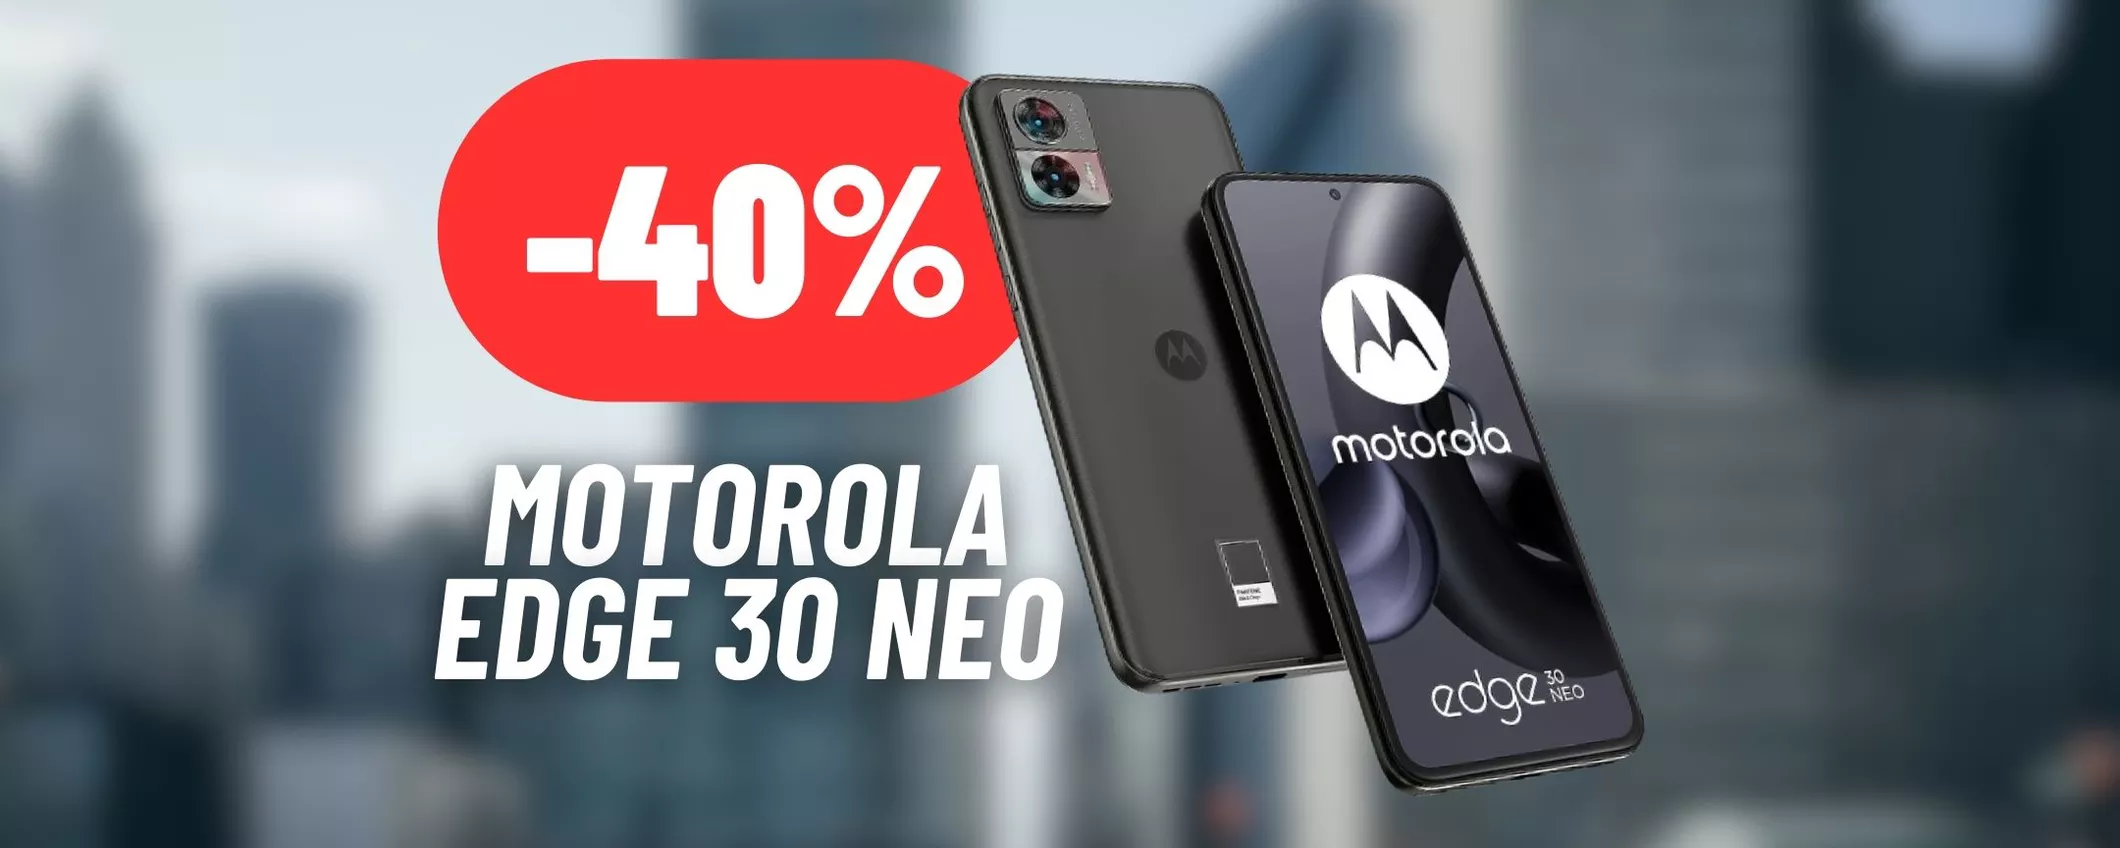 121€ RISPARMIATI sul Motorola Edge 30 Neo: sconto folle su eBay